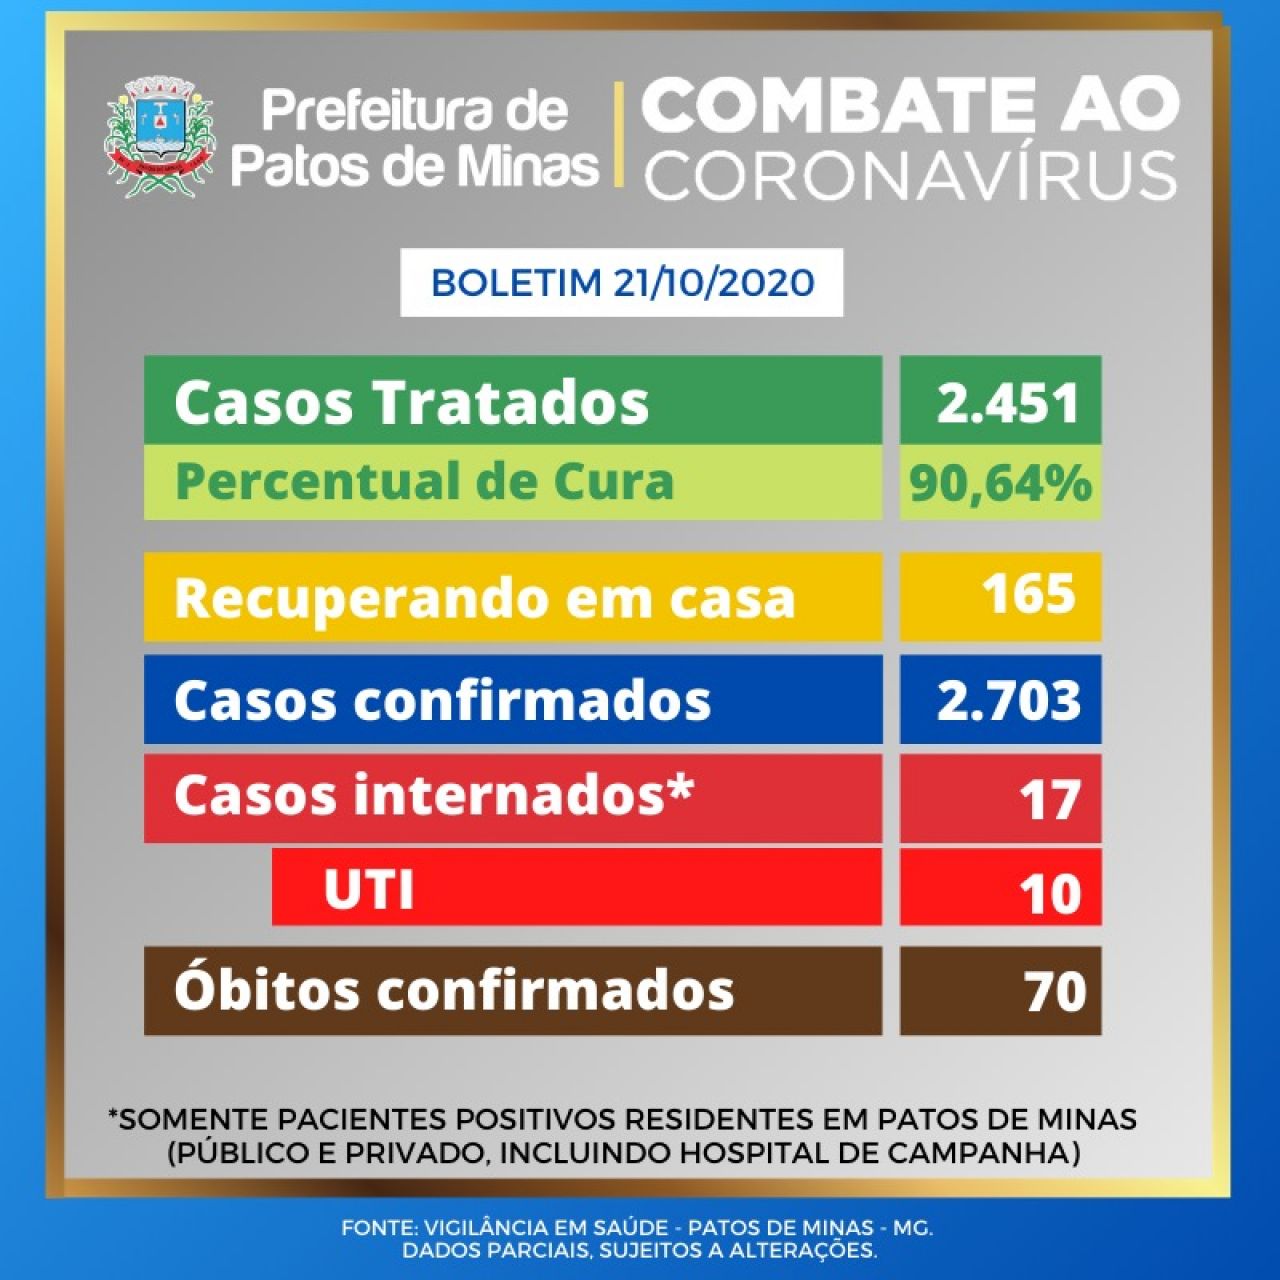 Covid-19: Patos de Minas tem 26 novos casos e 1 óbito confirmado nas últimas 24 horas